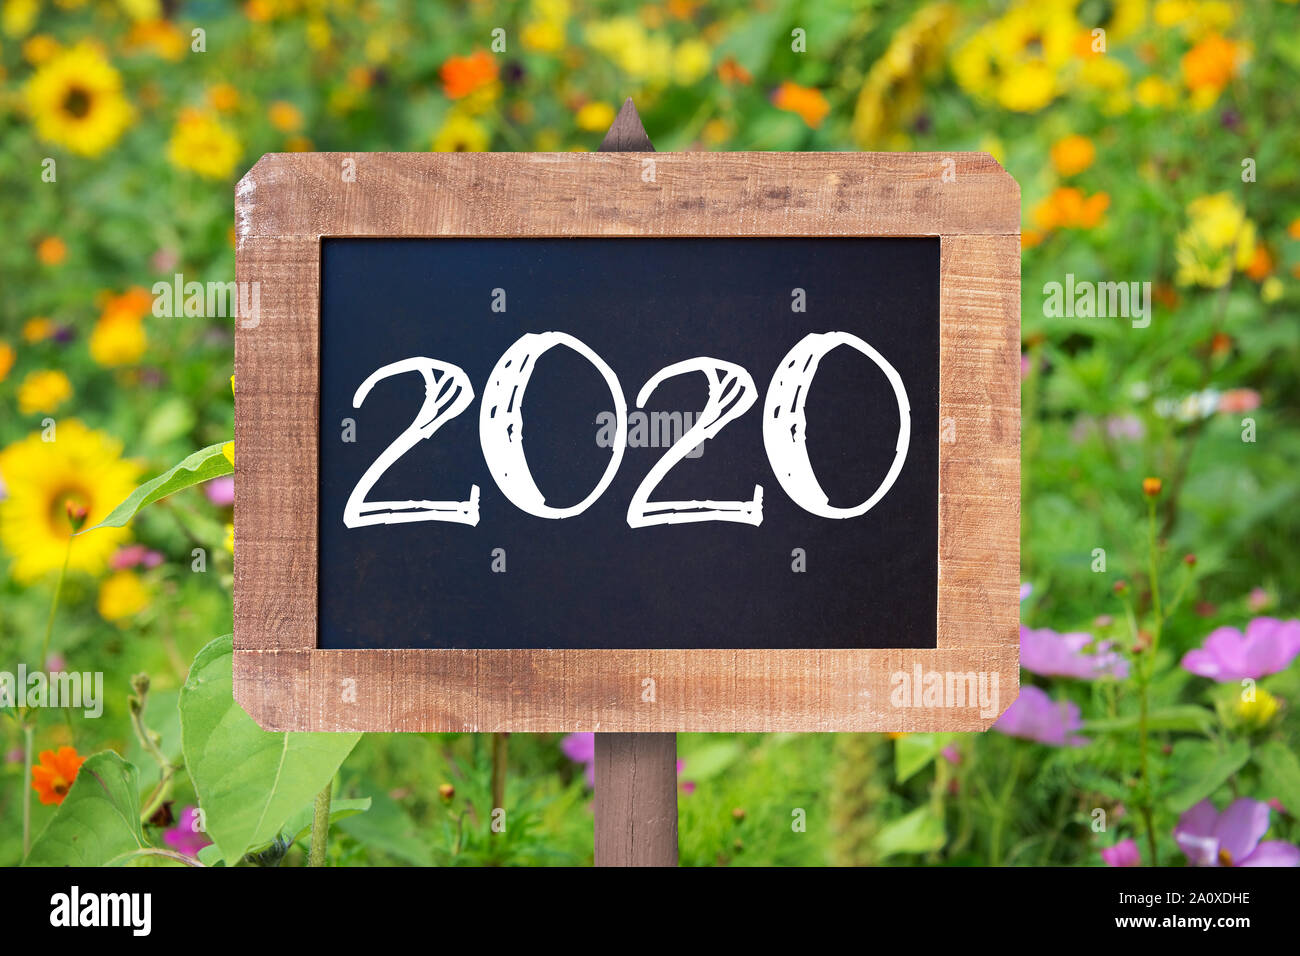 2020 scritto su un rustico di legno, estate girasoli e fiori selvatici in background Foto Stock